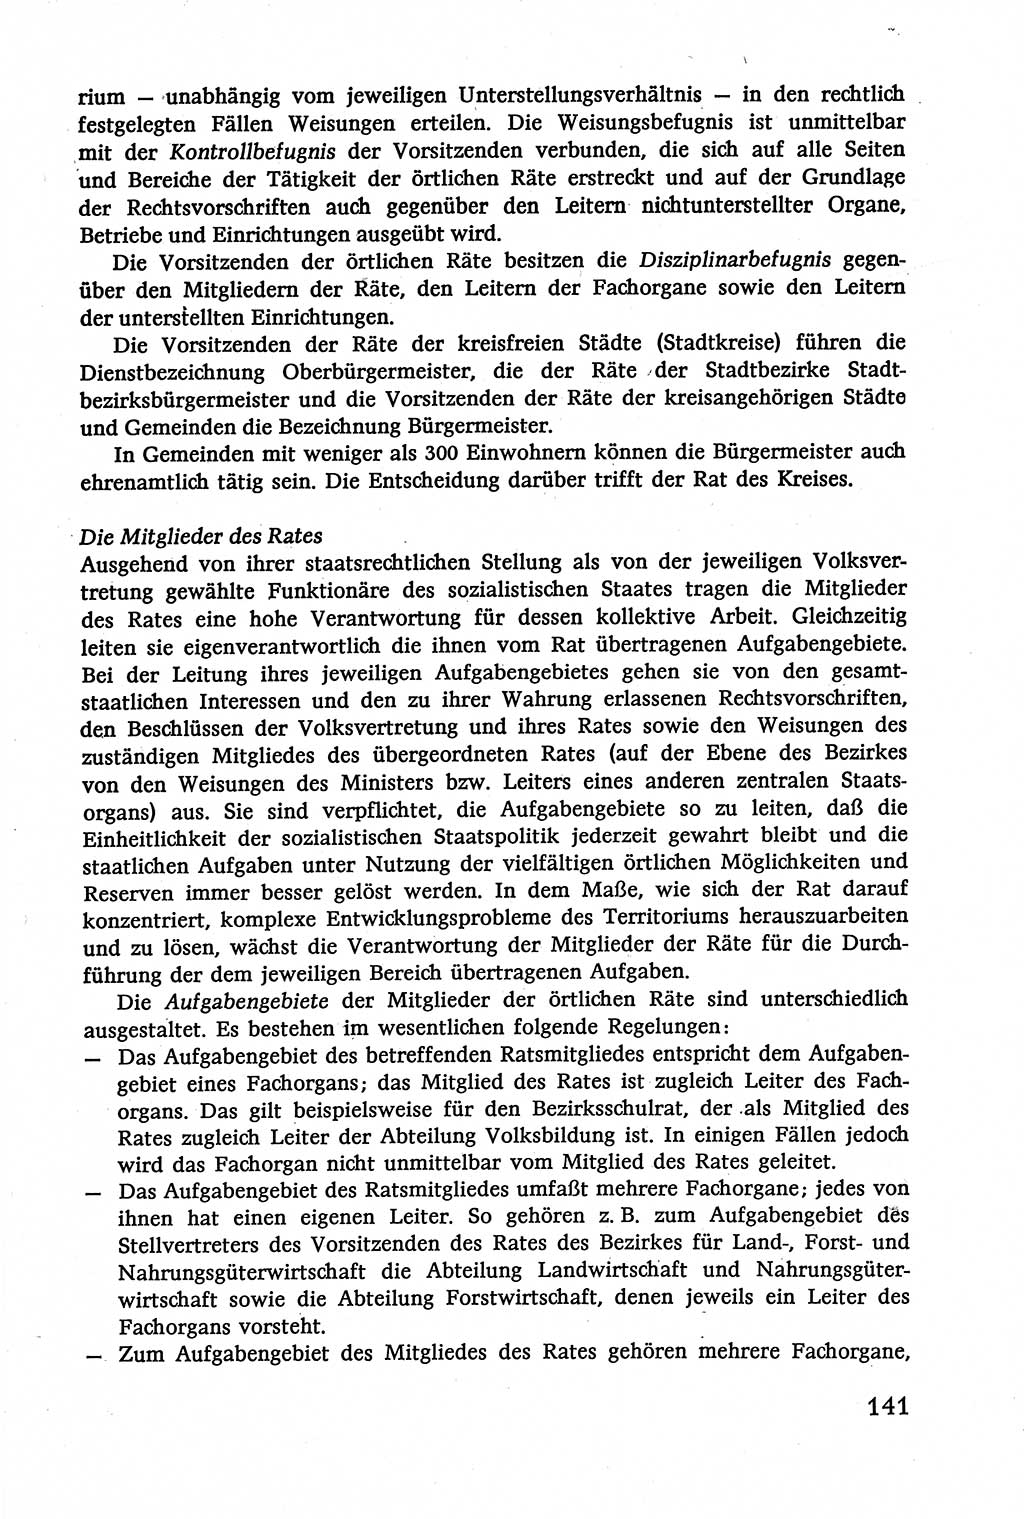 Verwaltungsrecht [Deutsche Demokratische Republik (DDR)], Lehrbuch 1979, Seite 141 (Verw.-R. DDR Lb. 1979, S. 141)